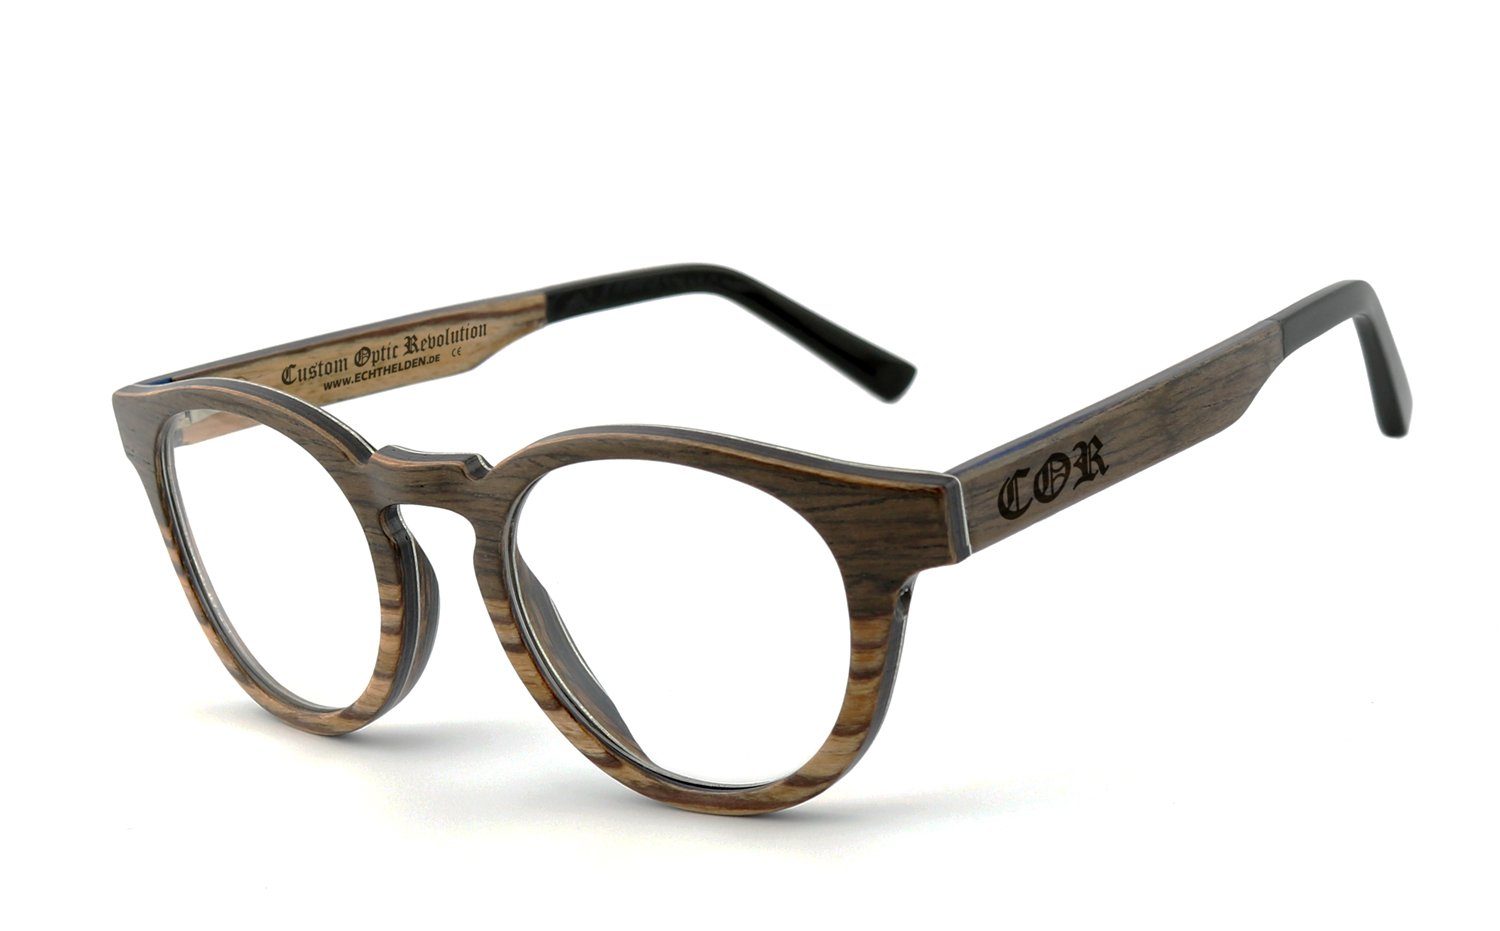 COR Brille COR002 Holzbrille, Bügel mit Flex-Scharnieren